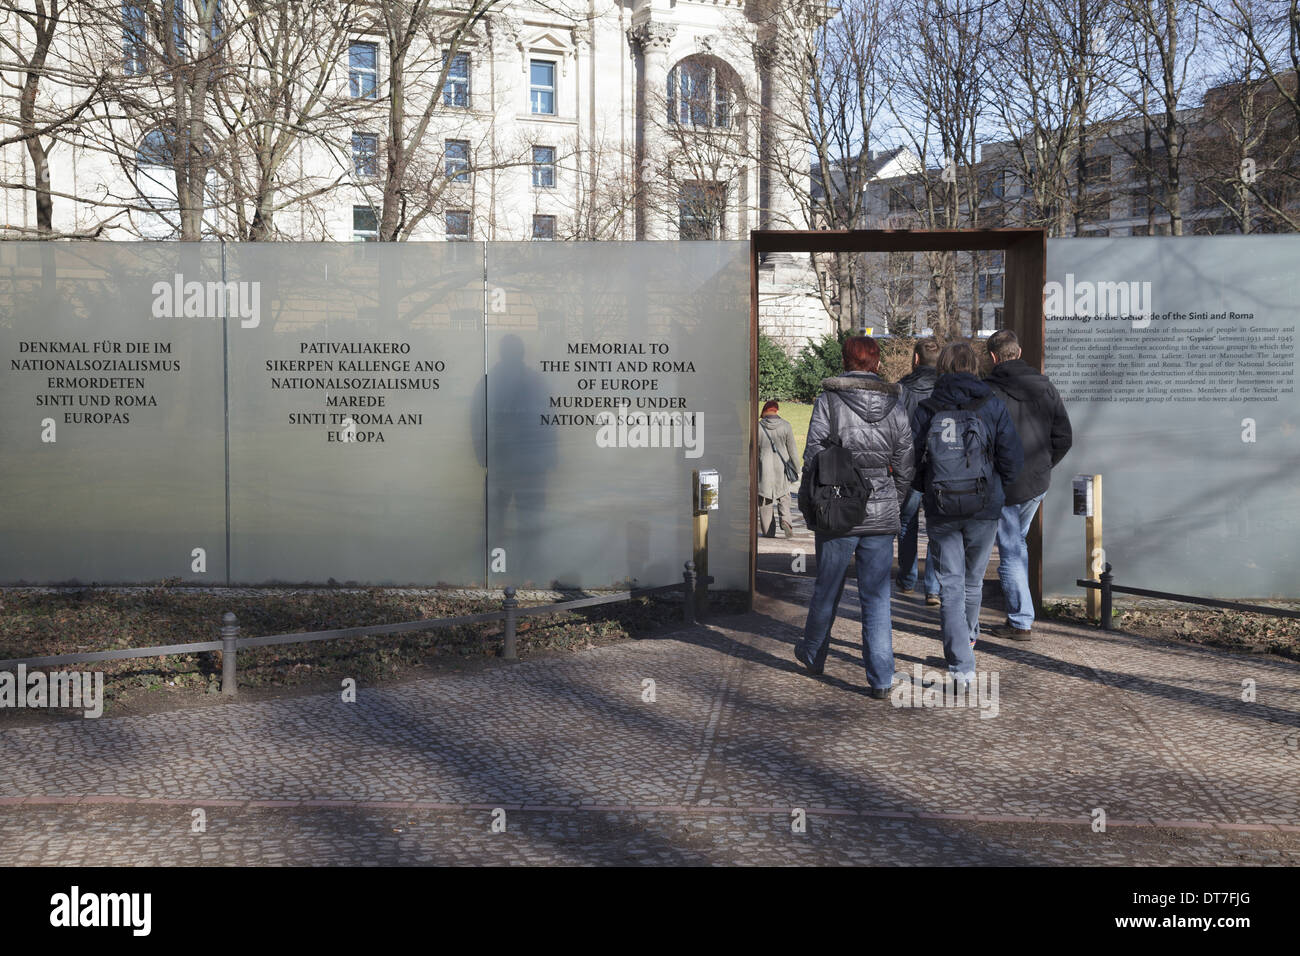 Denkmal für die Sinti und Roma Europas ermordet unter dem Nationalsozialismus, Tiergarten, Berlin, Deutschland Stockfoto